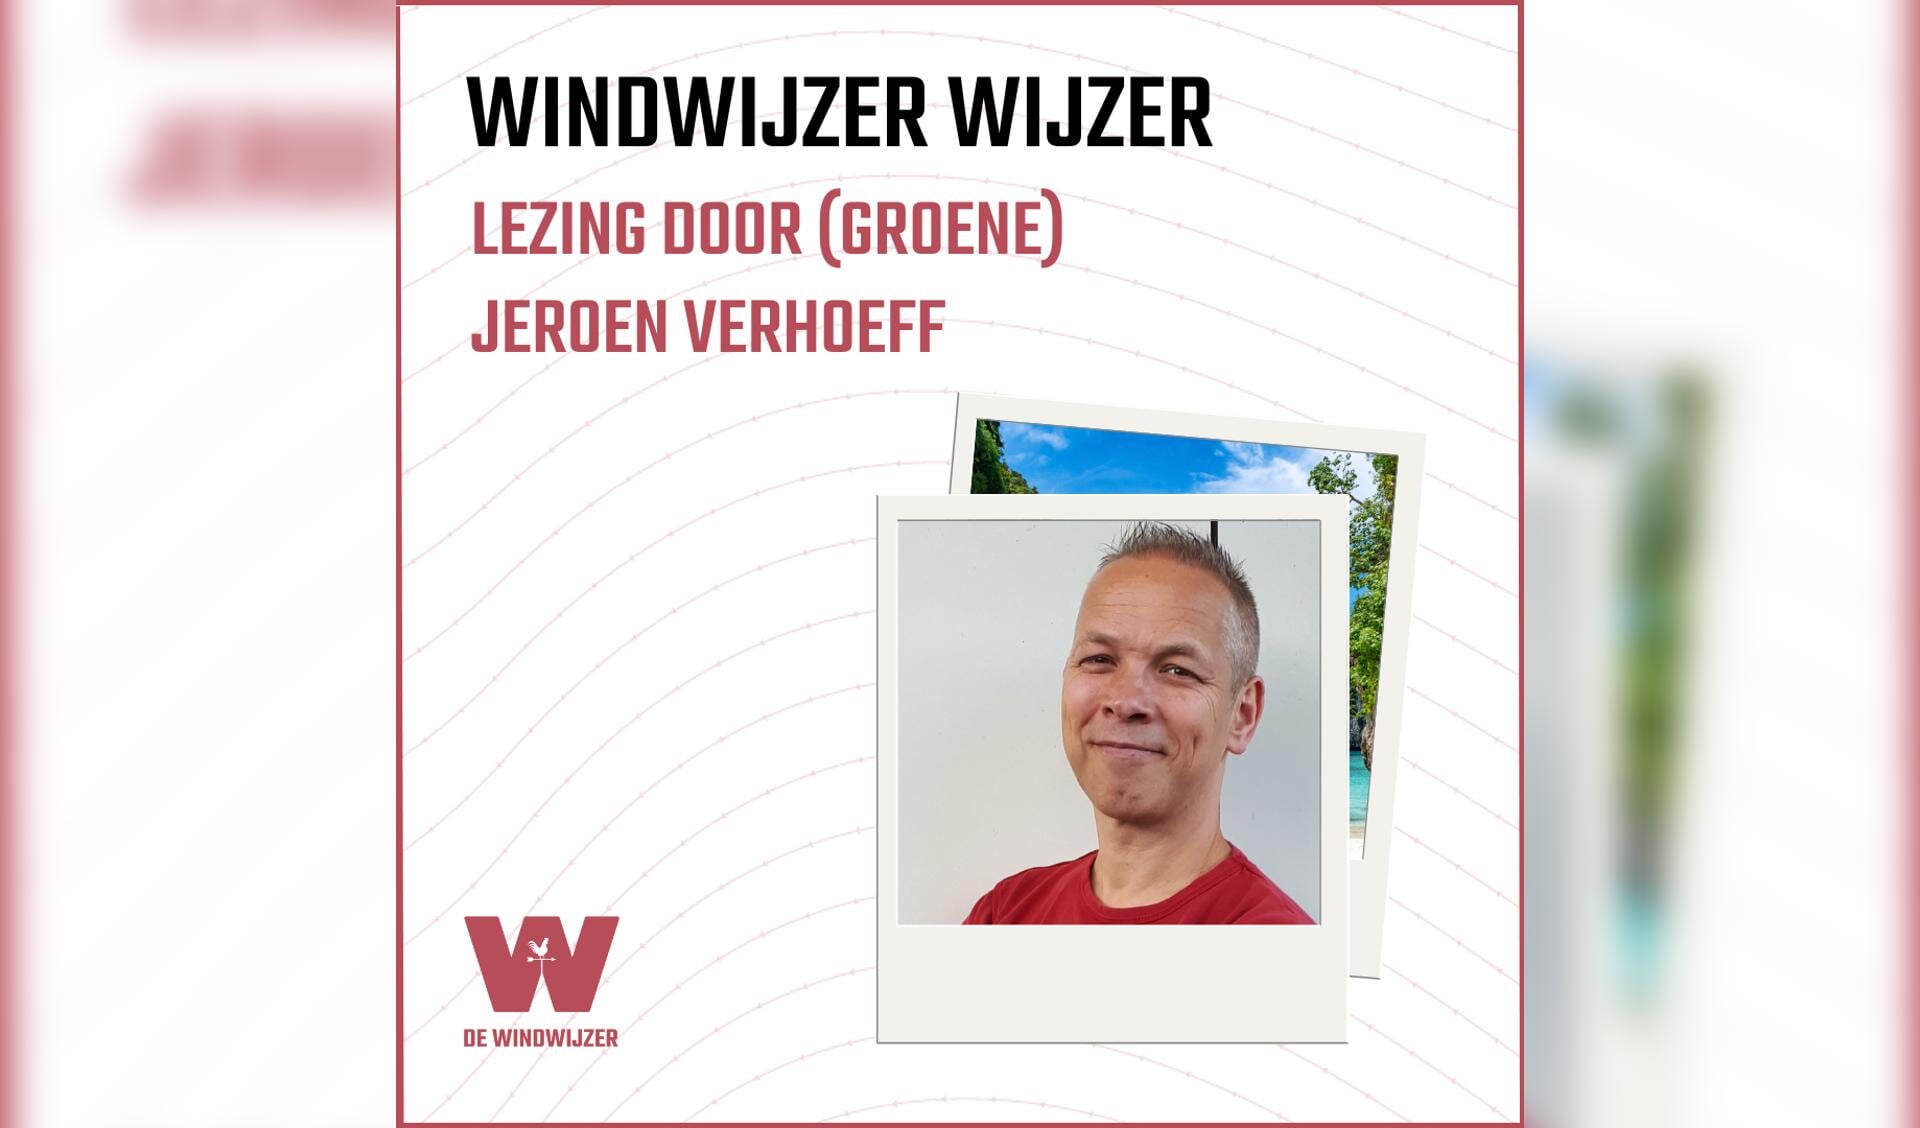 Windwijzer wijzer met Jeroen Verhoeff